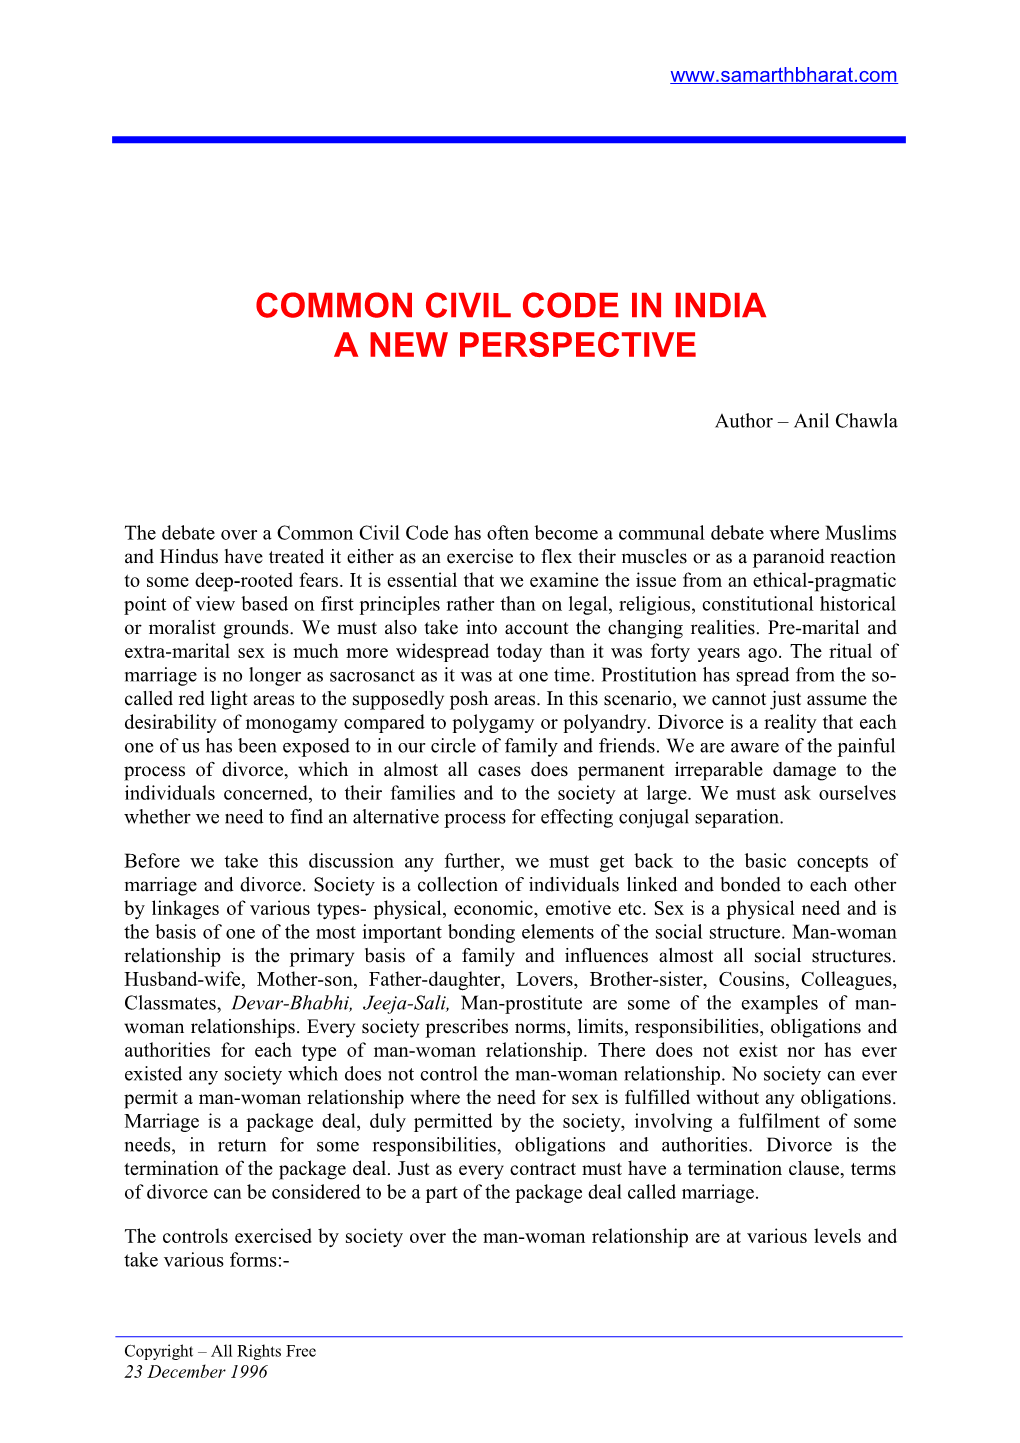 Common Civil Code in India